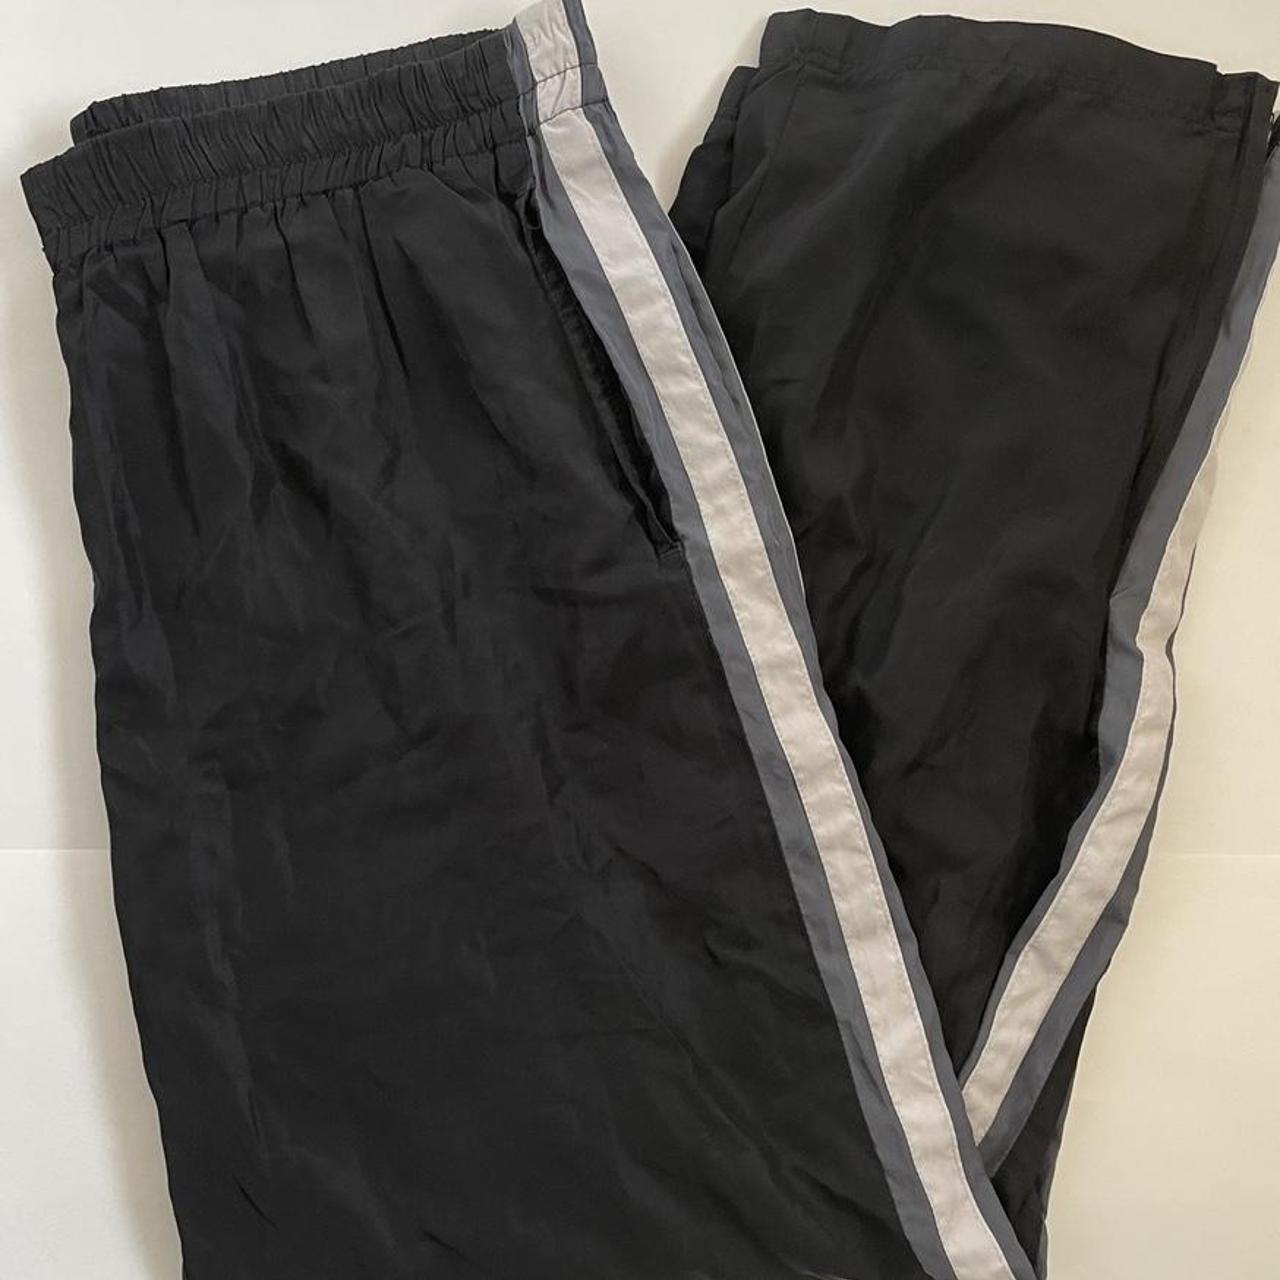 Vintage Windbreaker Tracksuit Pants Sportswear... - Depop